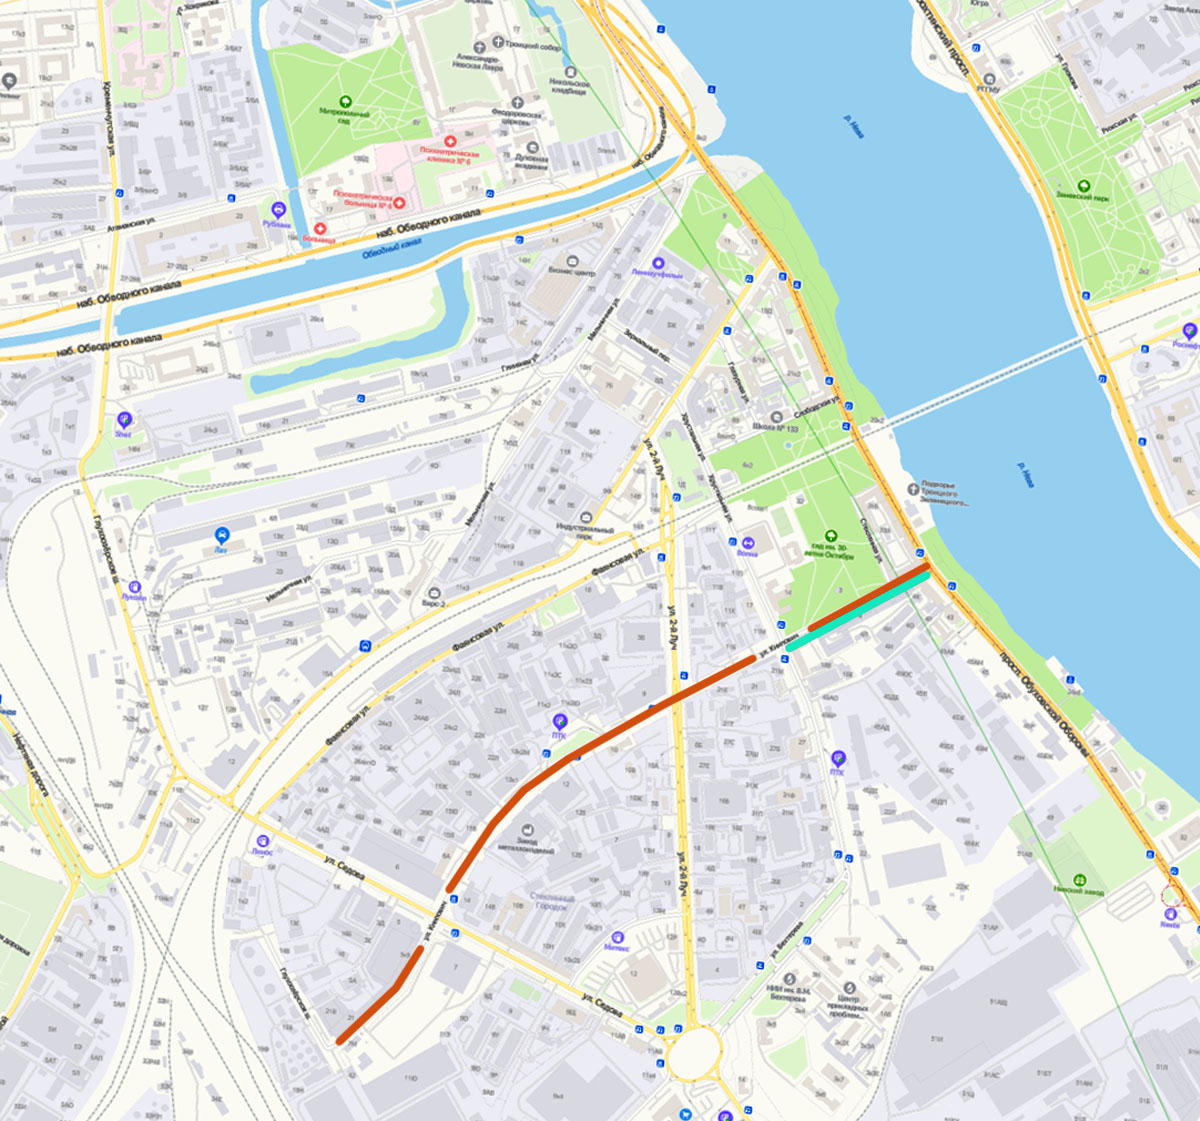 Улица Книпович на современной карте Санкт-Петербурга (yandex.ru) - красная линия. Бирюзовым цветом показан отрезок бывшей Смоляной улицы.